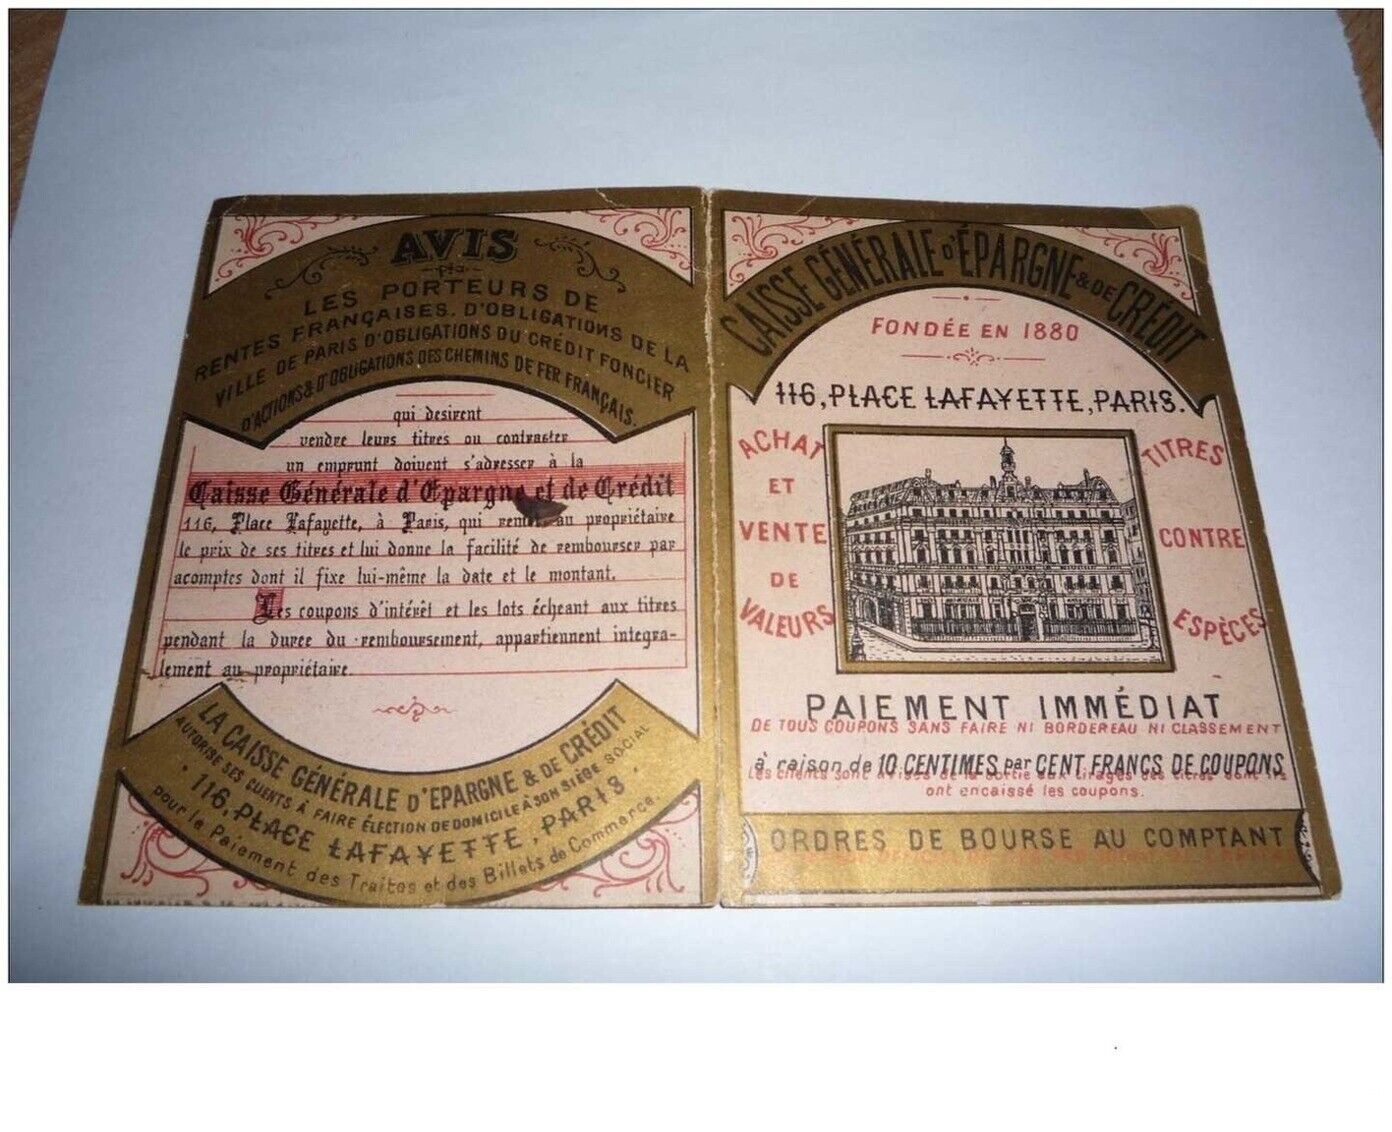 CHROMOS.CALENDRIERS n°9.CAISSE GENERAL D EPARGNE.PARIS .1887.14.5 X 10 CM EN